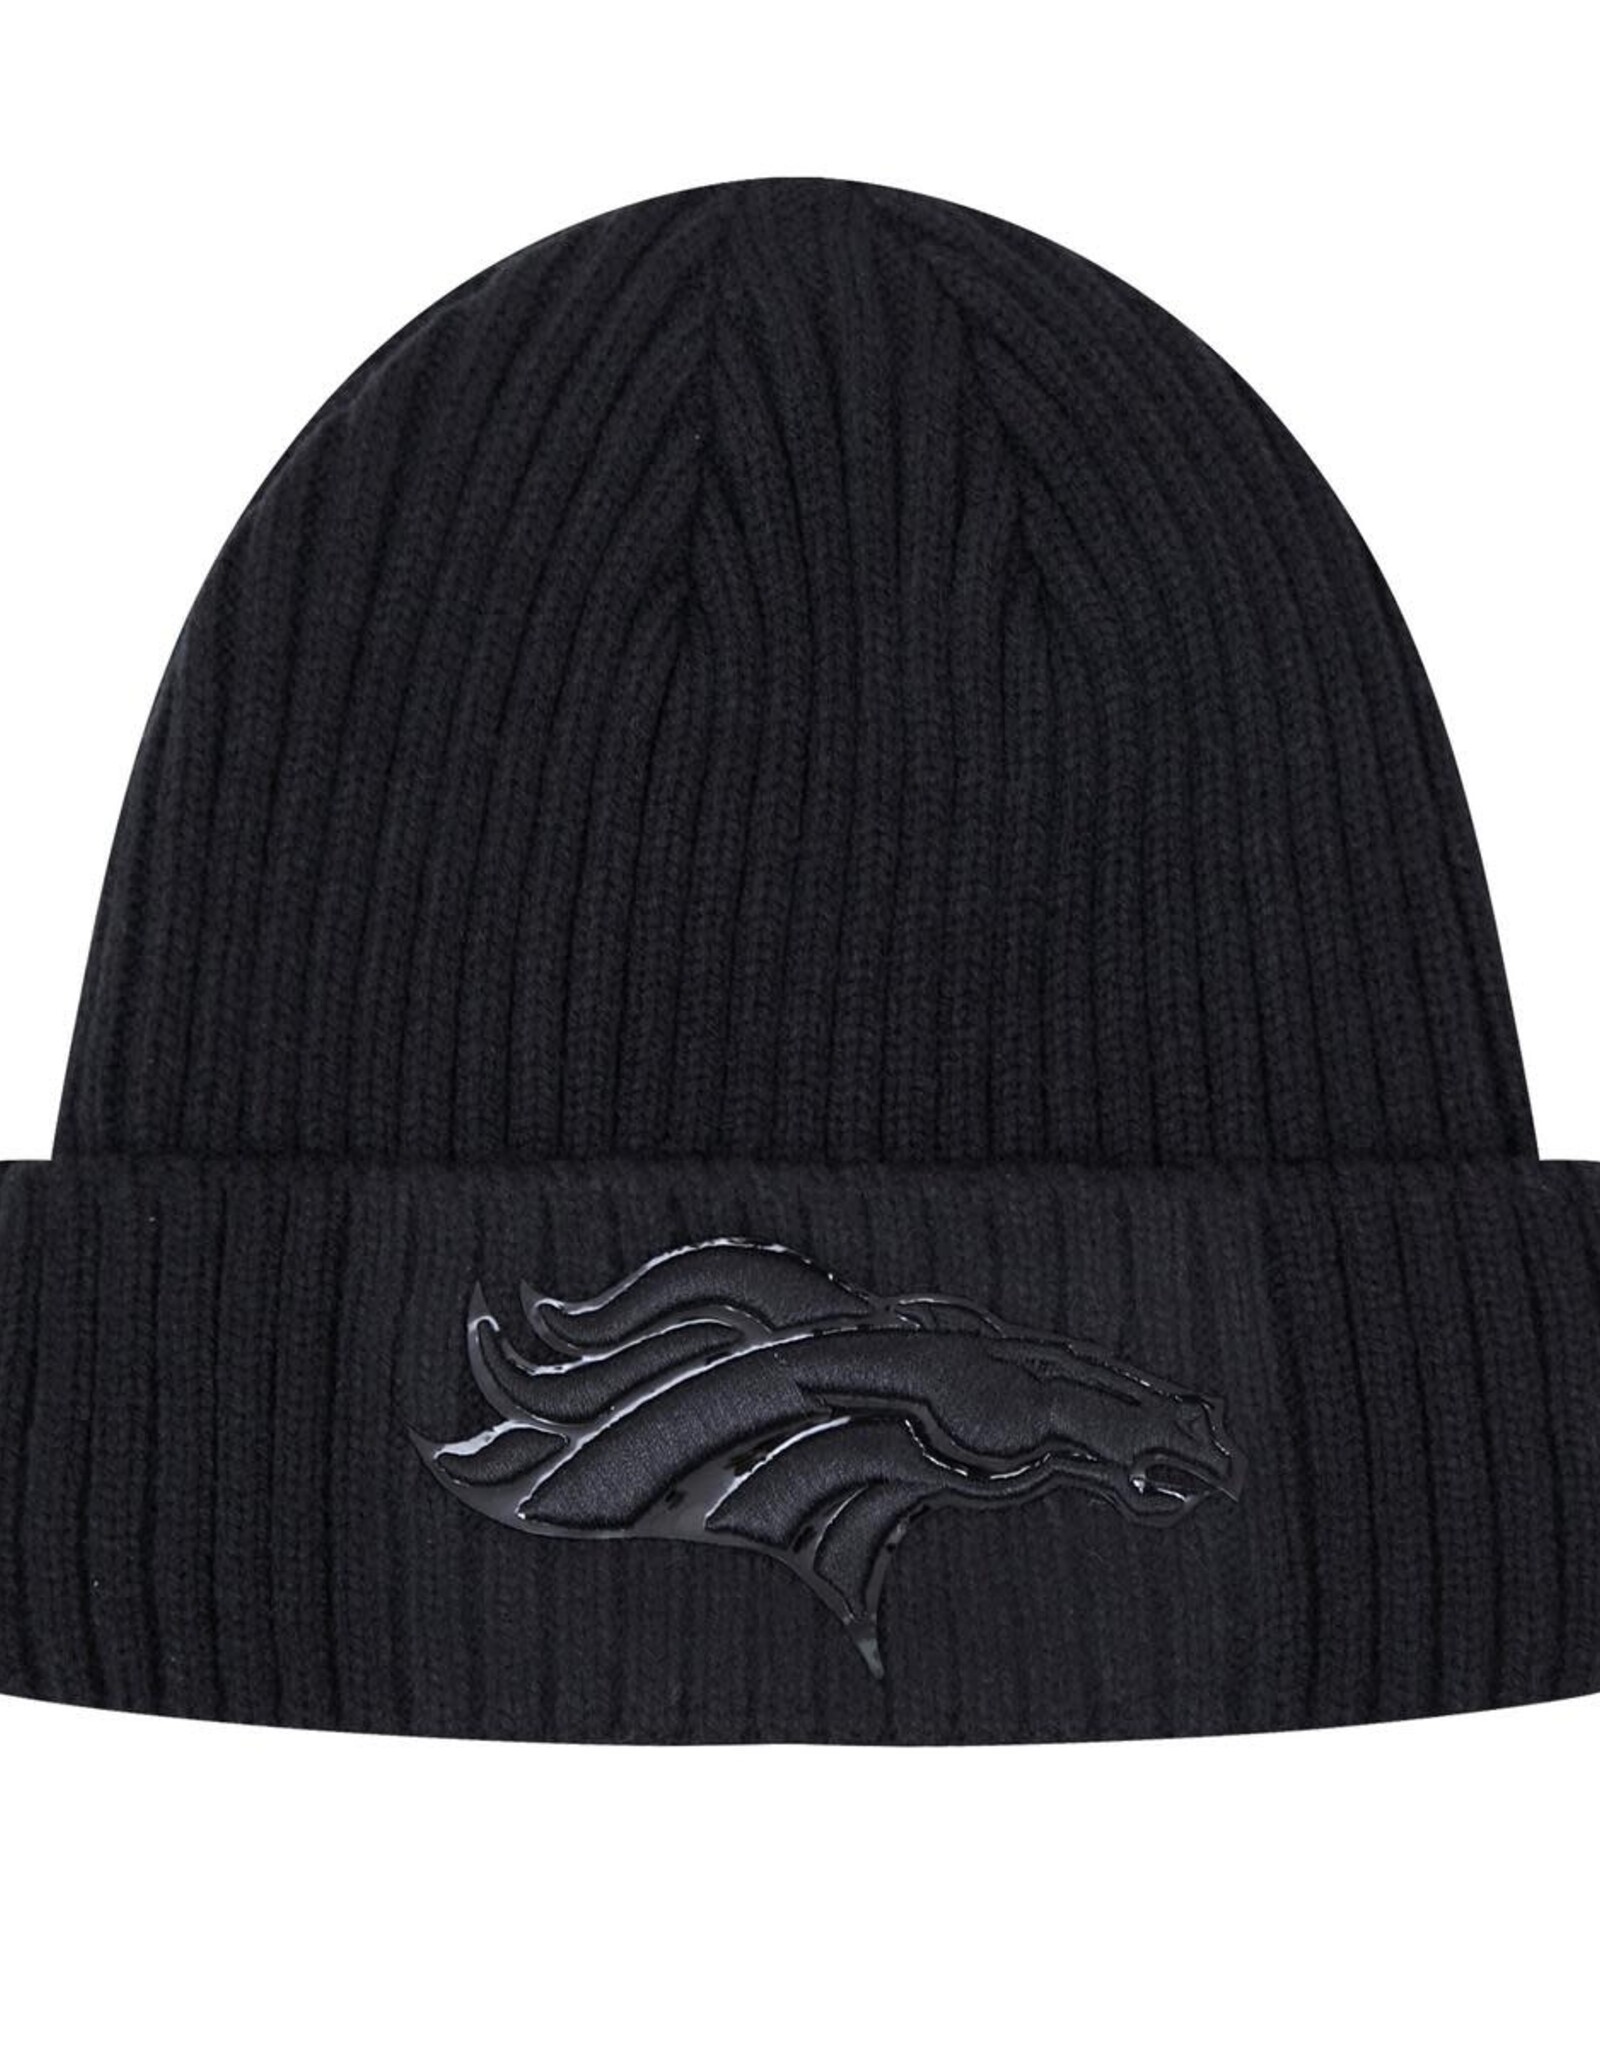 Pro Standard Denver Broncos Triple Black Knit Hat